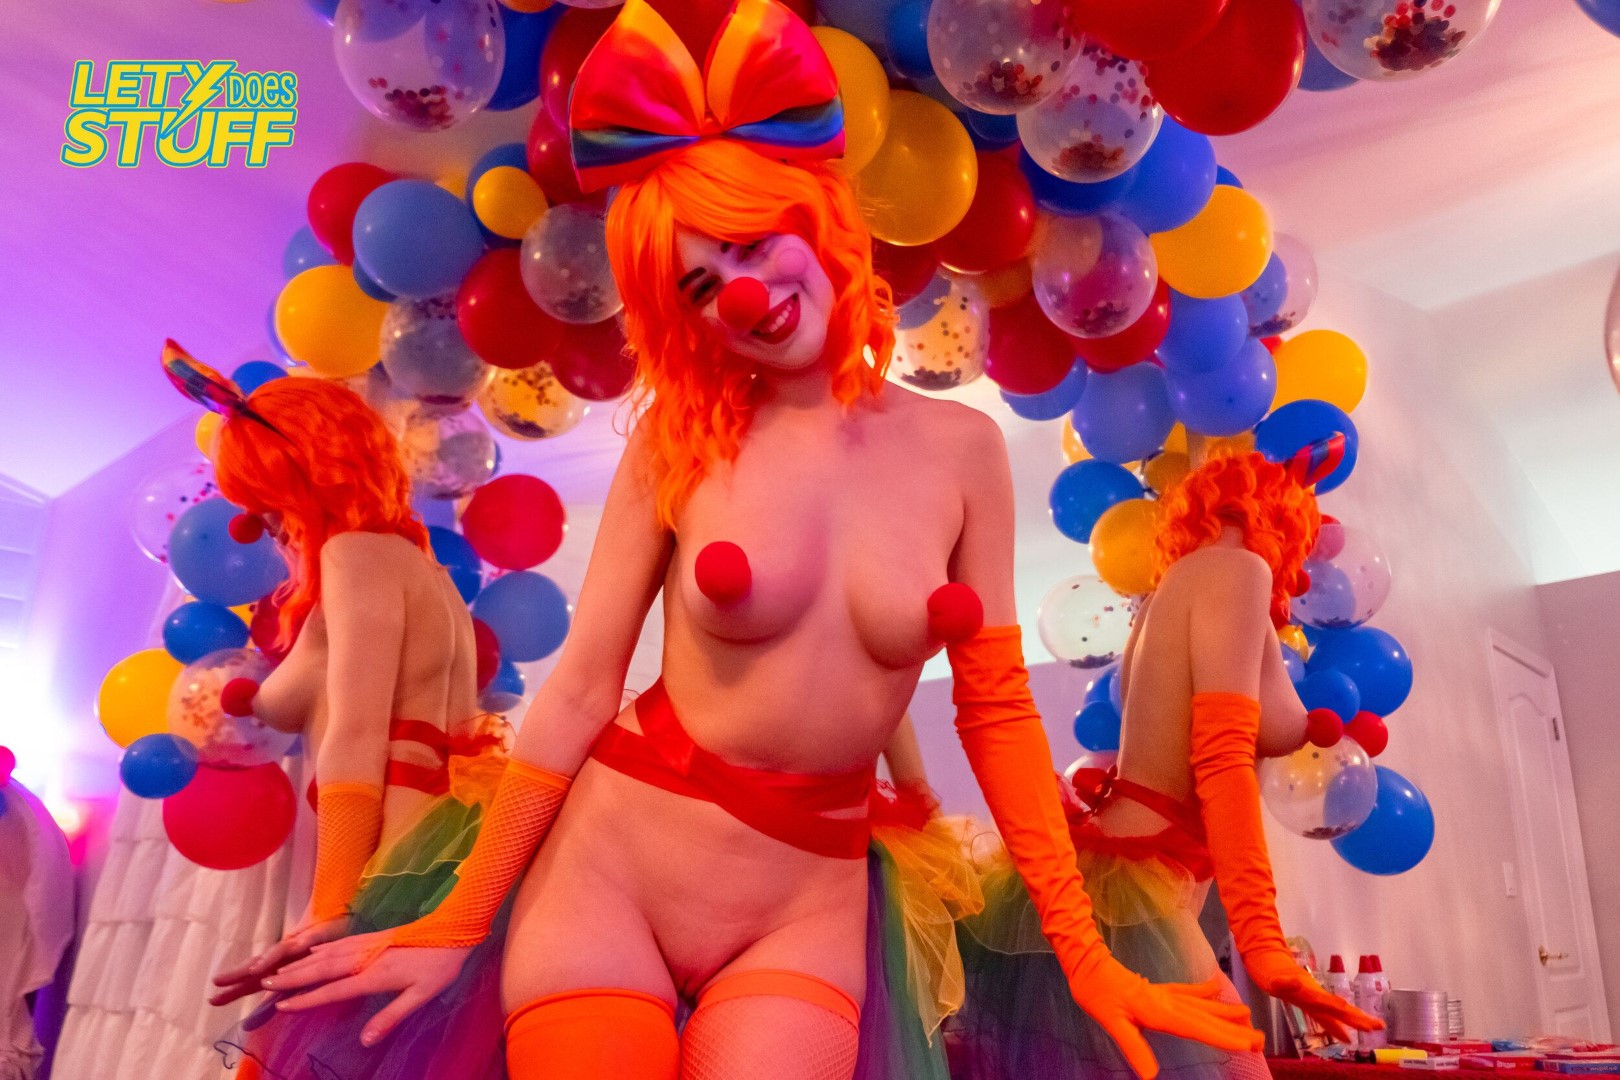 Trixy the clown - nude photos